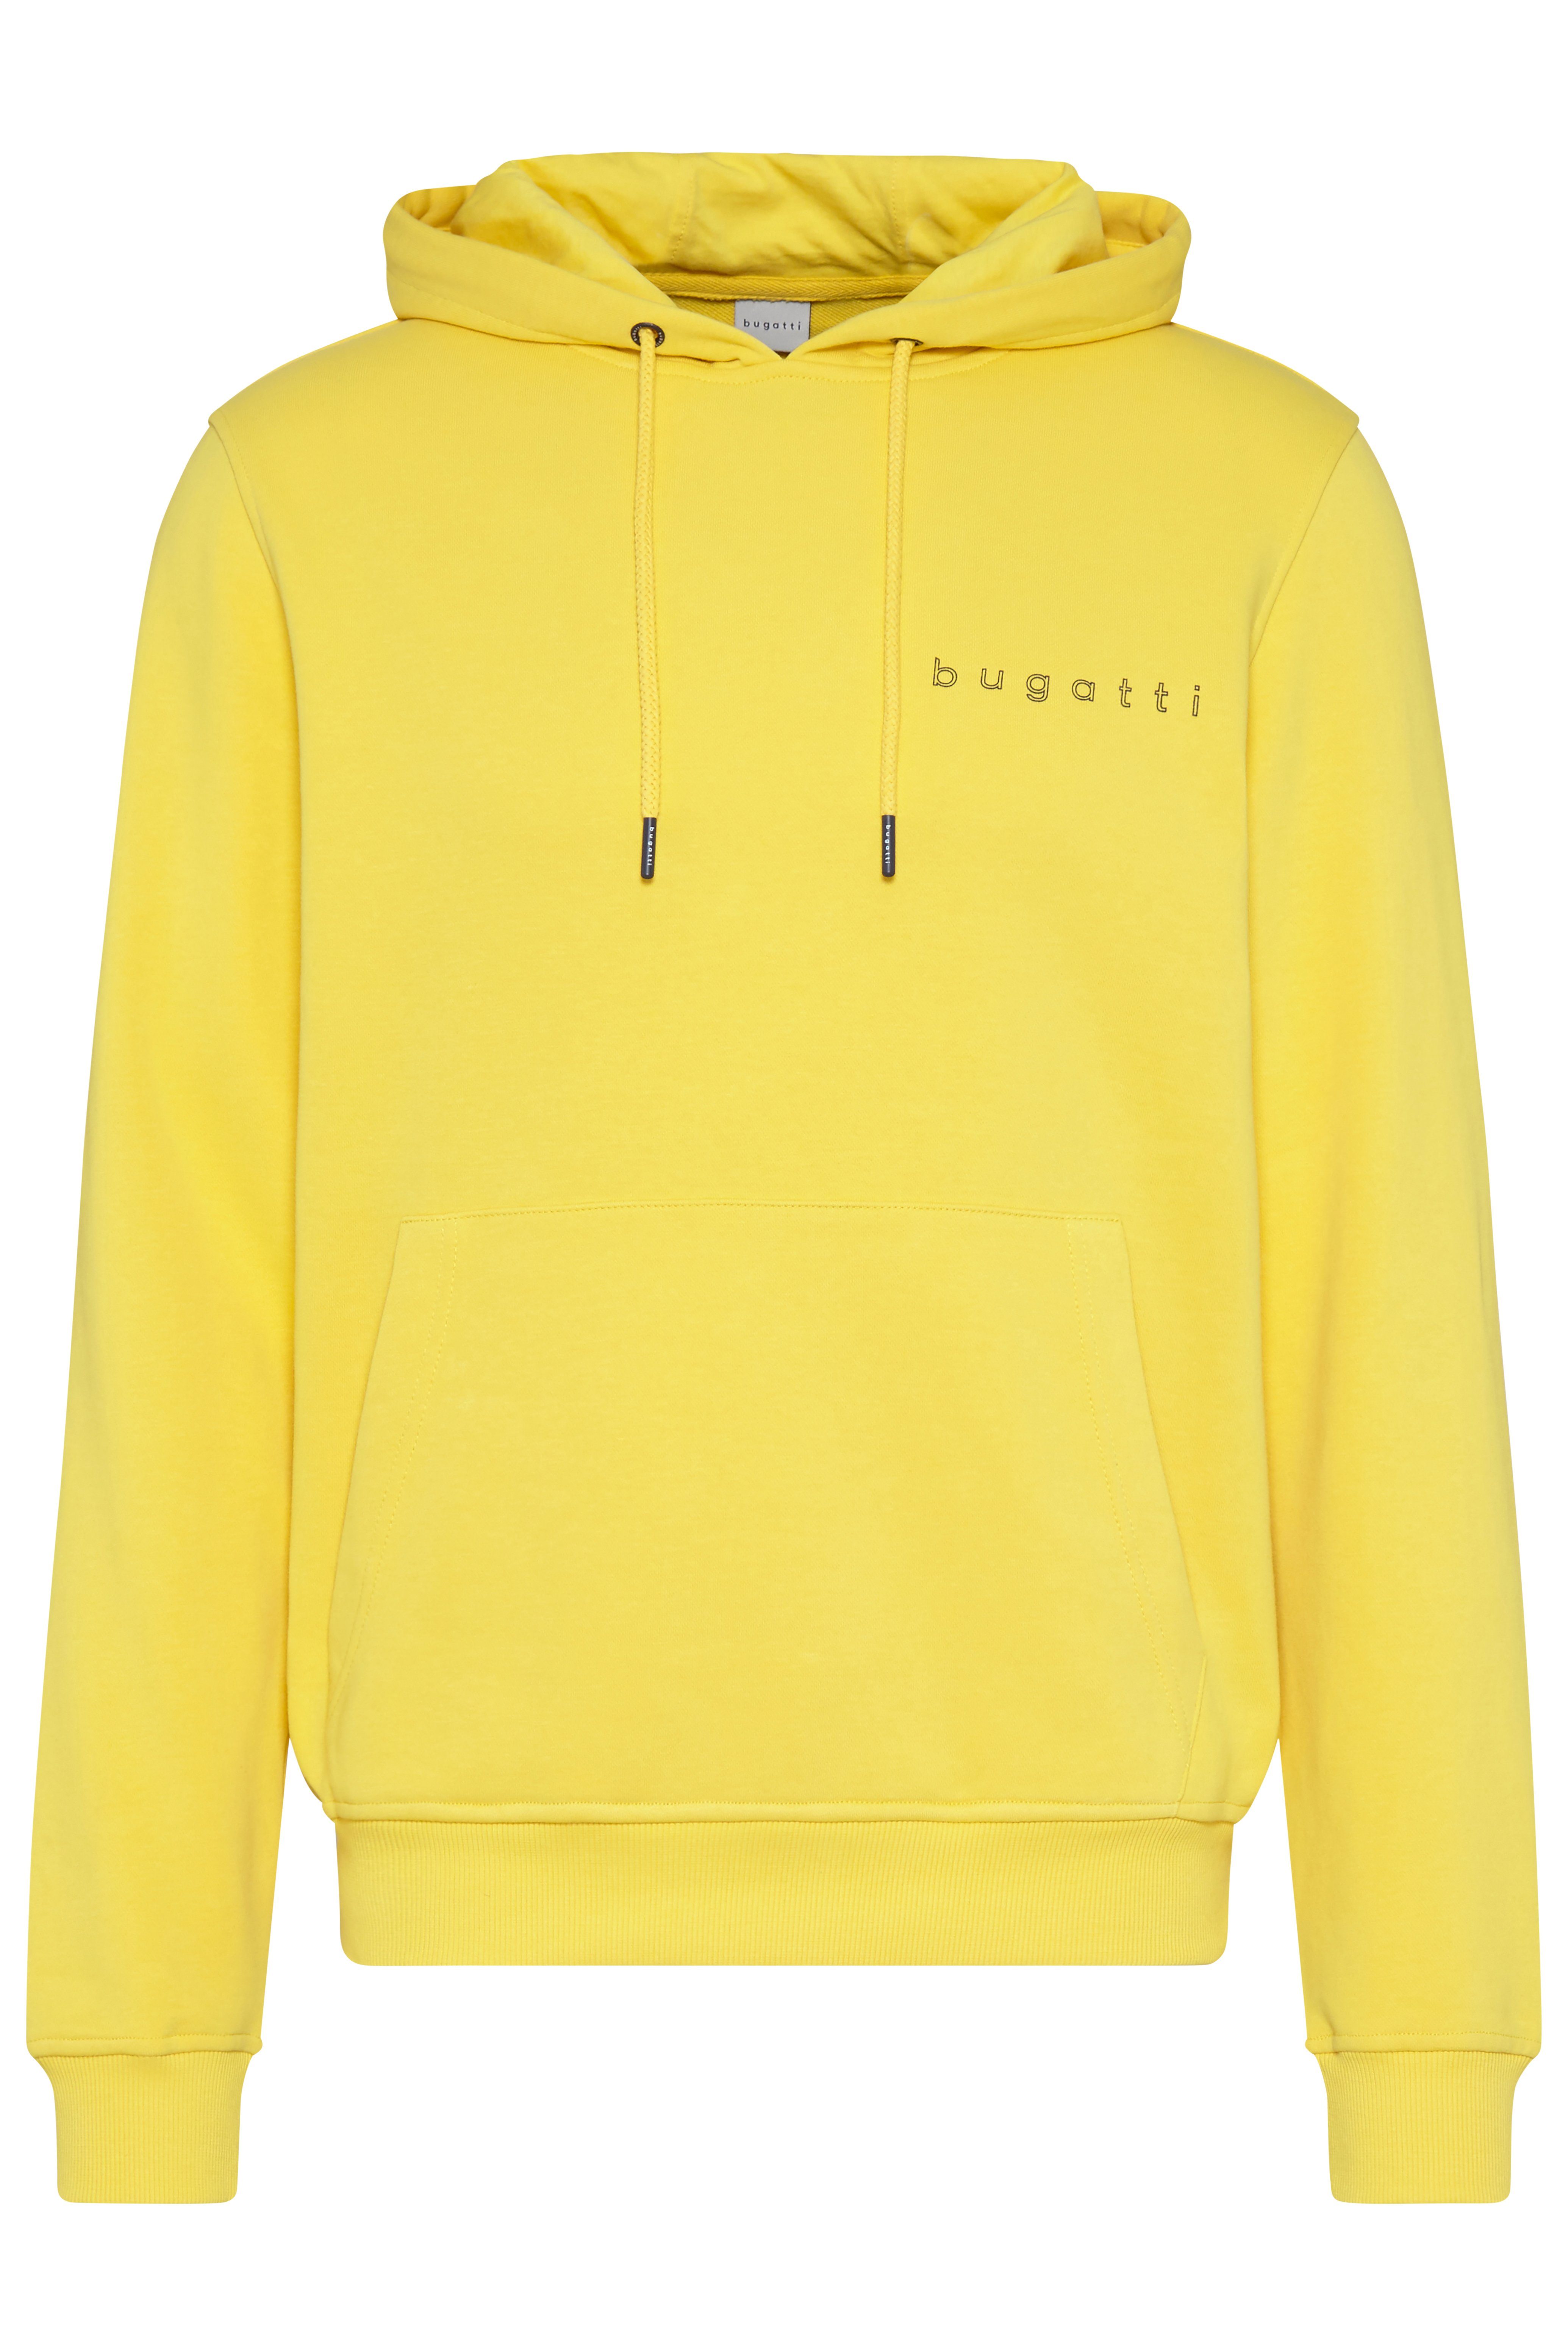 Rundhals-Ausschnitt, Passform Fit (620) Modern bugatti Kapuzensweatshirt 8950-35070 Körpernahe durch Gelb